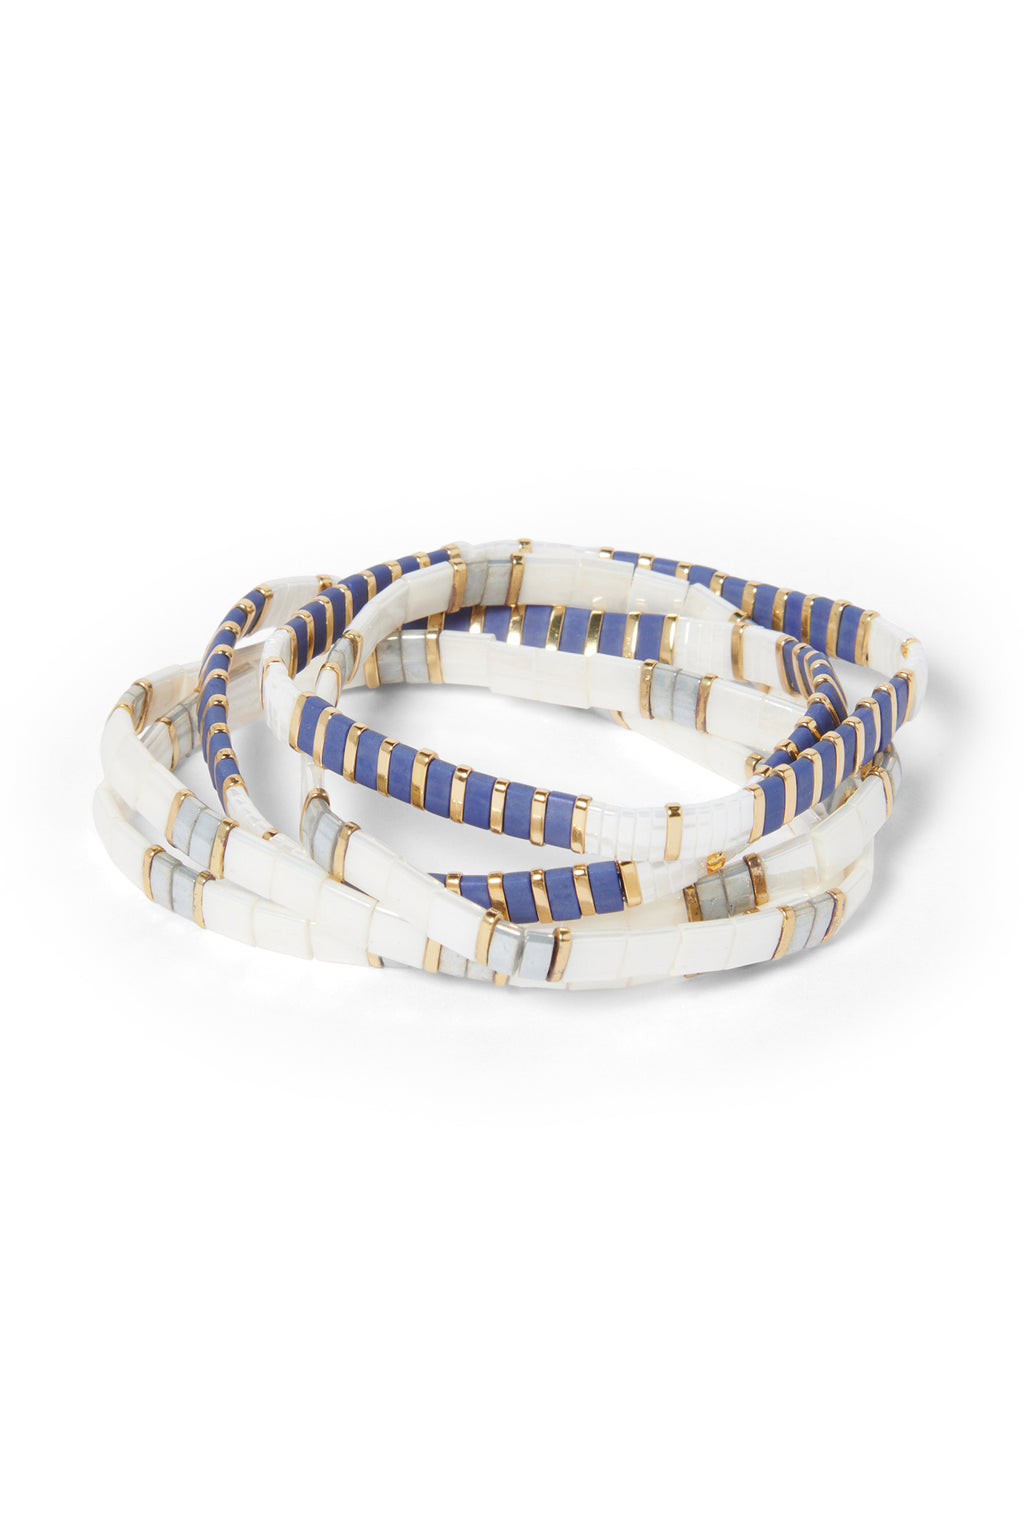 The Kavala Bracelet Set